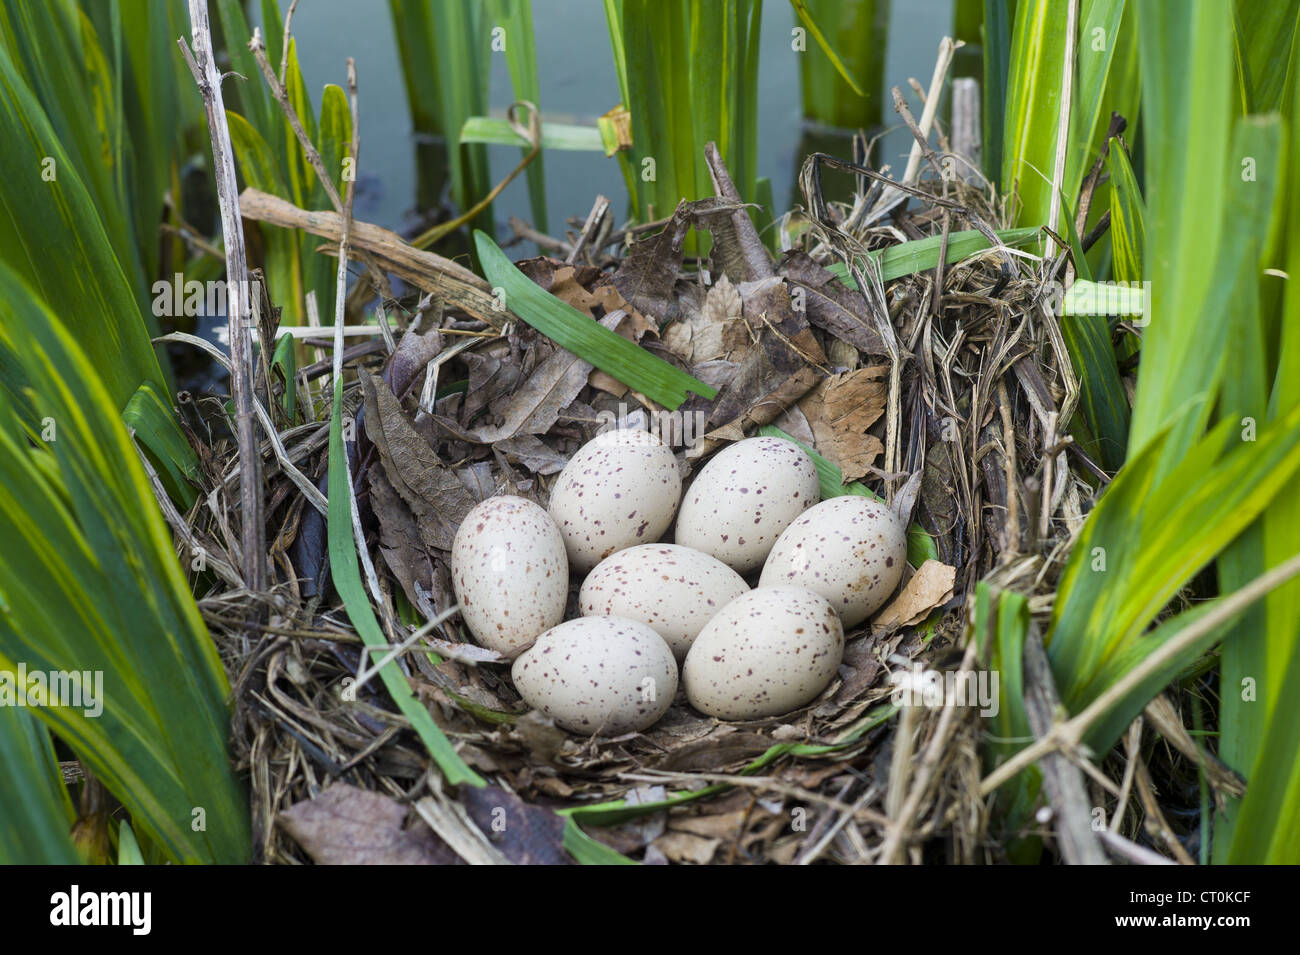 Teichhuhn Nest, gemacht mit sieben Eiern gelegt, mit Zweigen unter Iris Pflanzen in einem Teich in Swinbrook, die Cotswolds, Oxfordshire, Vereinigtes Königreich Stockfoto